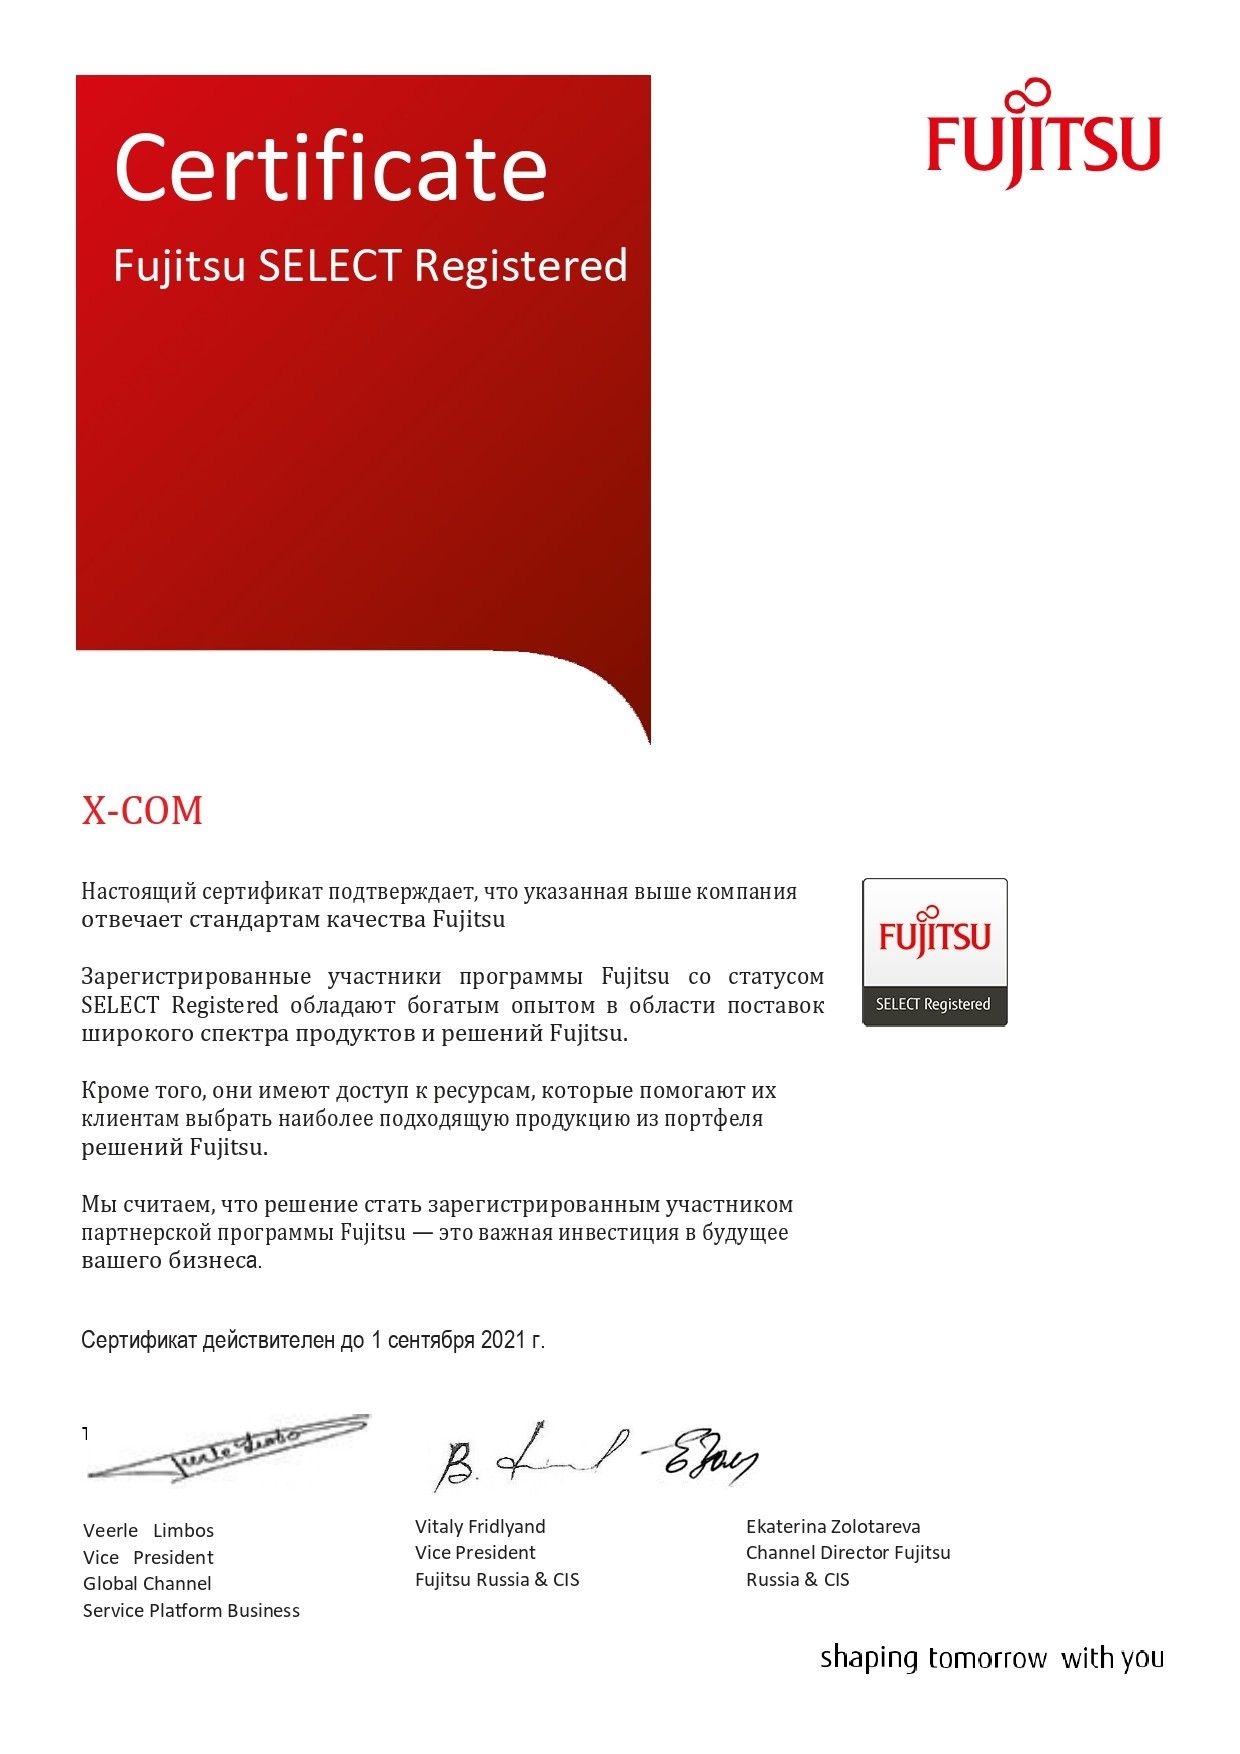 X-Com подтвердила партнерскую авторизацию Fujitsu